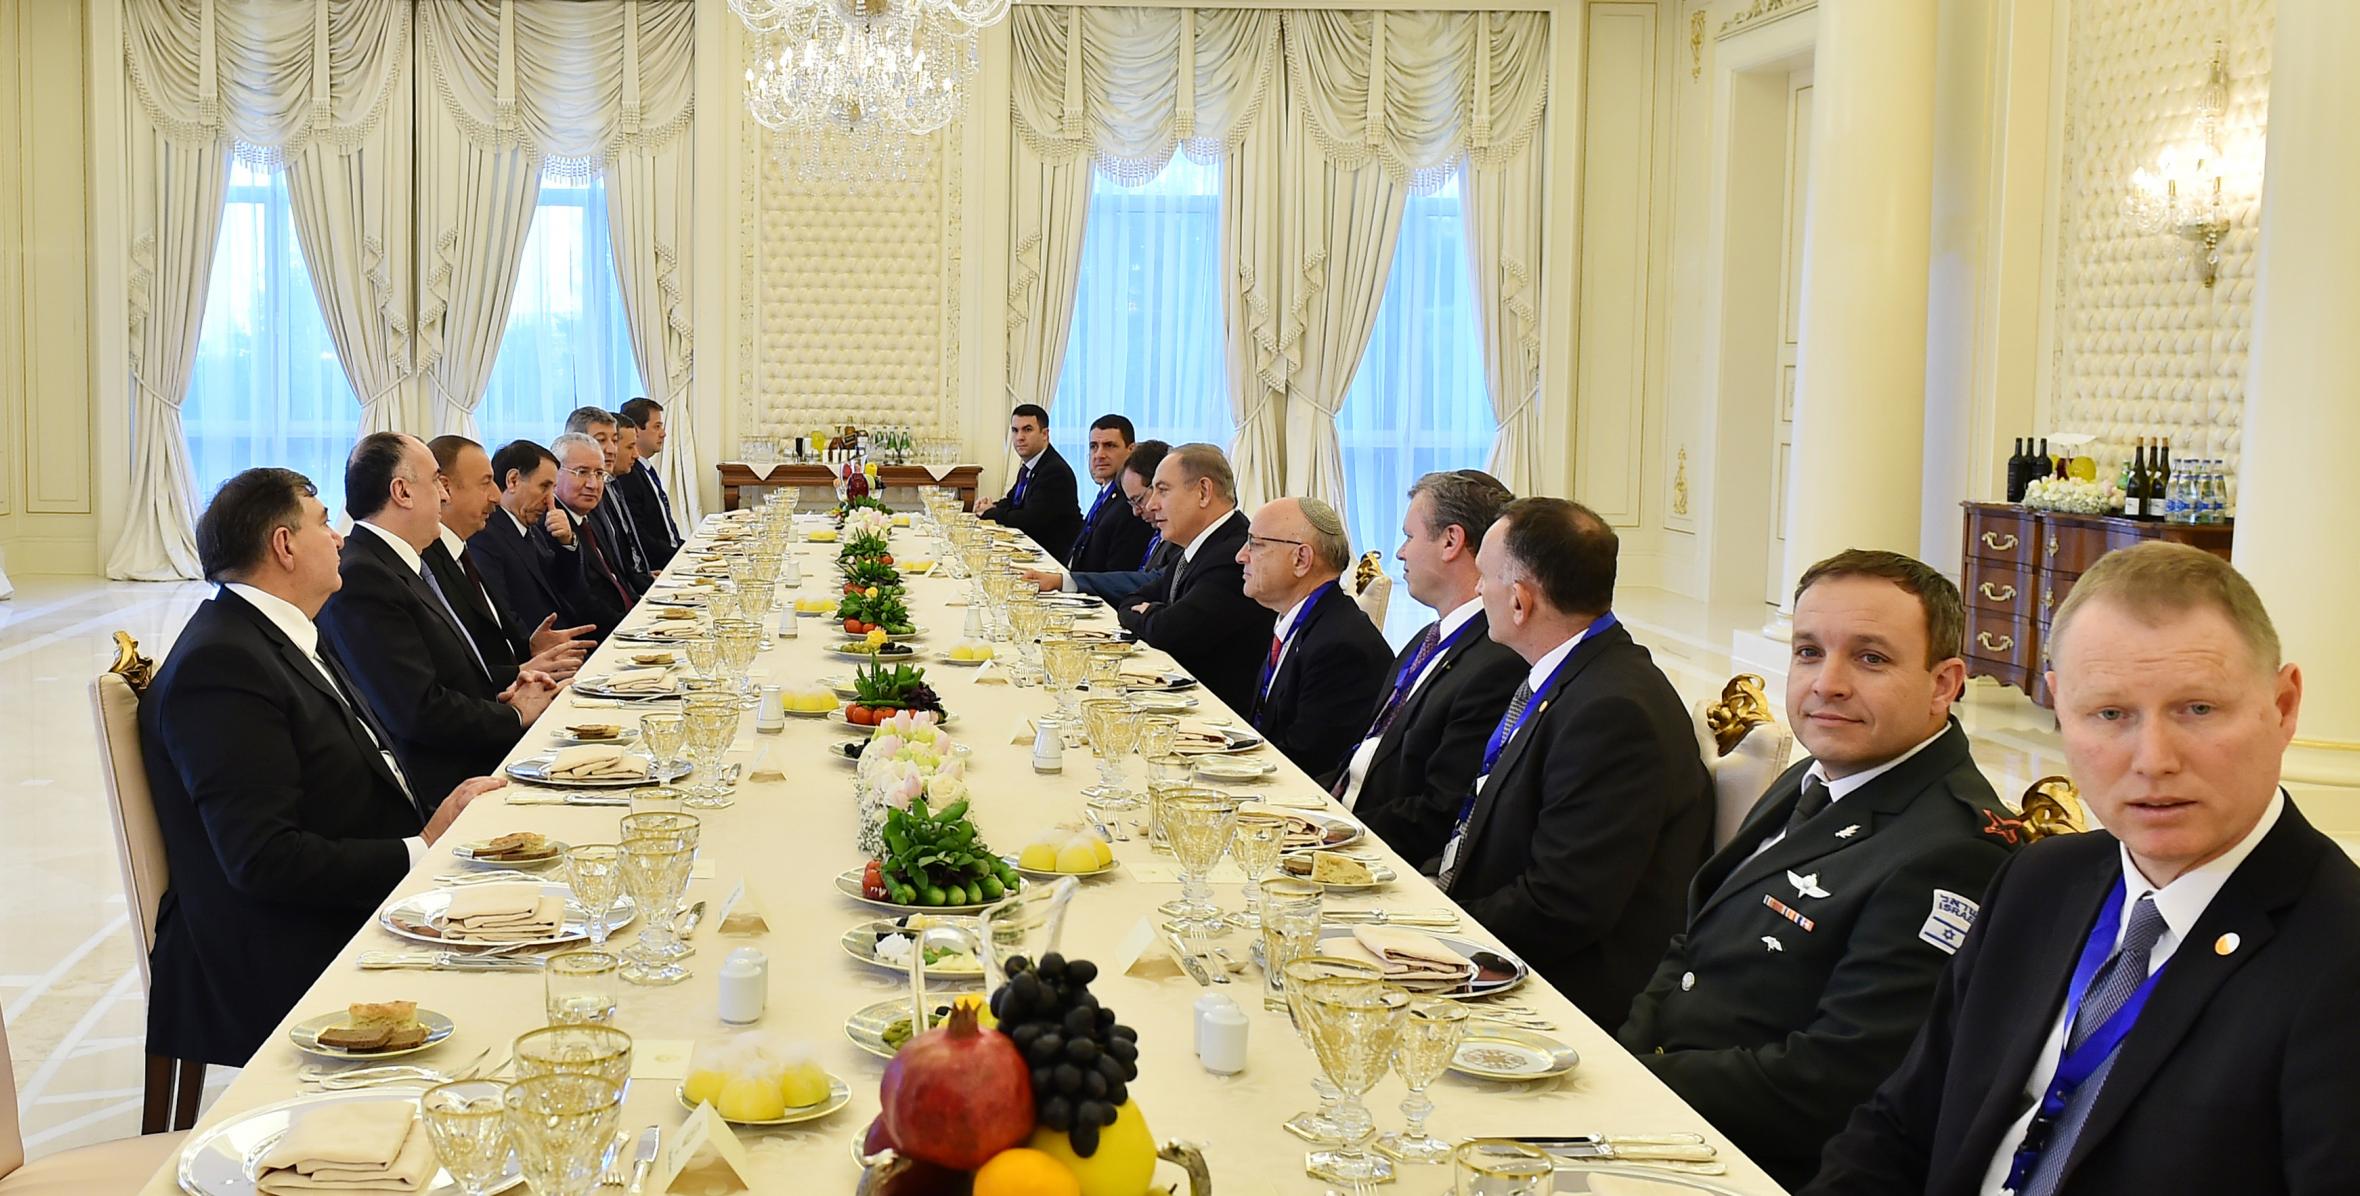 President Ilham Aliyev, Israeli Prime Minister Benjamin Netanyahu have joint working dinner